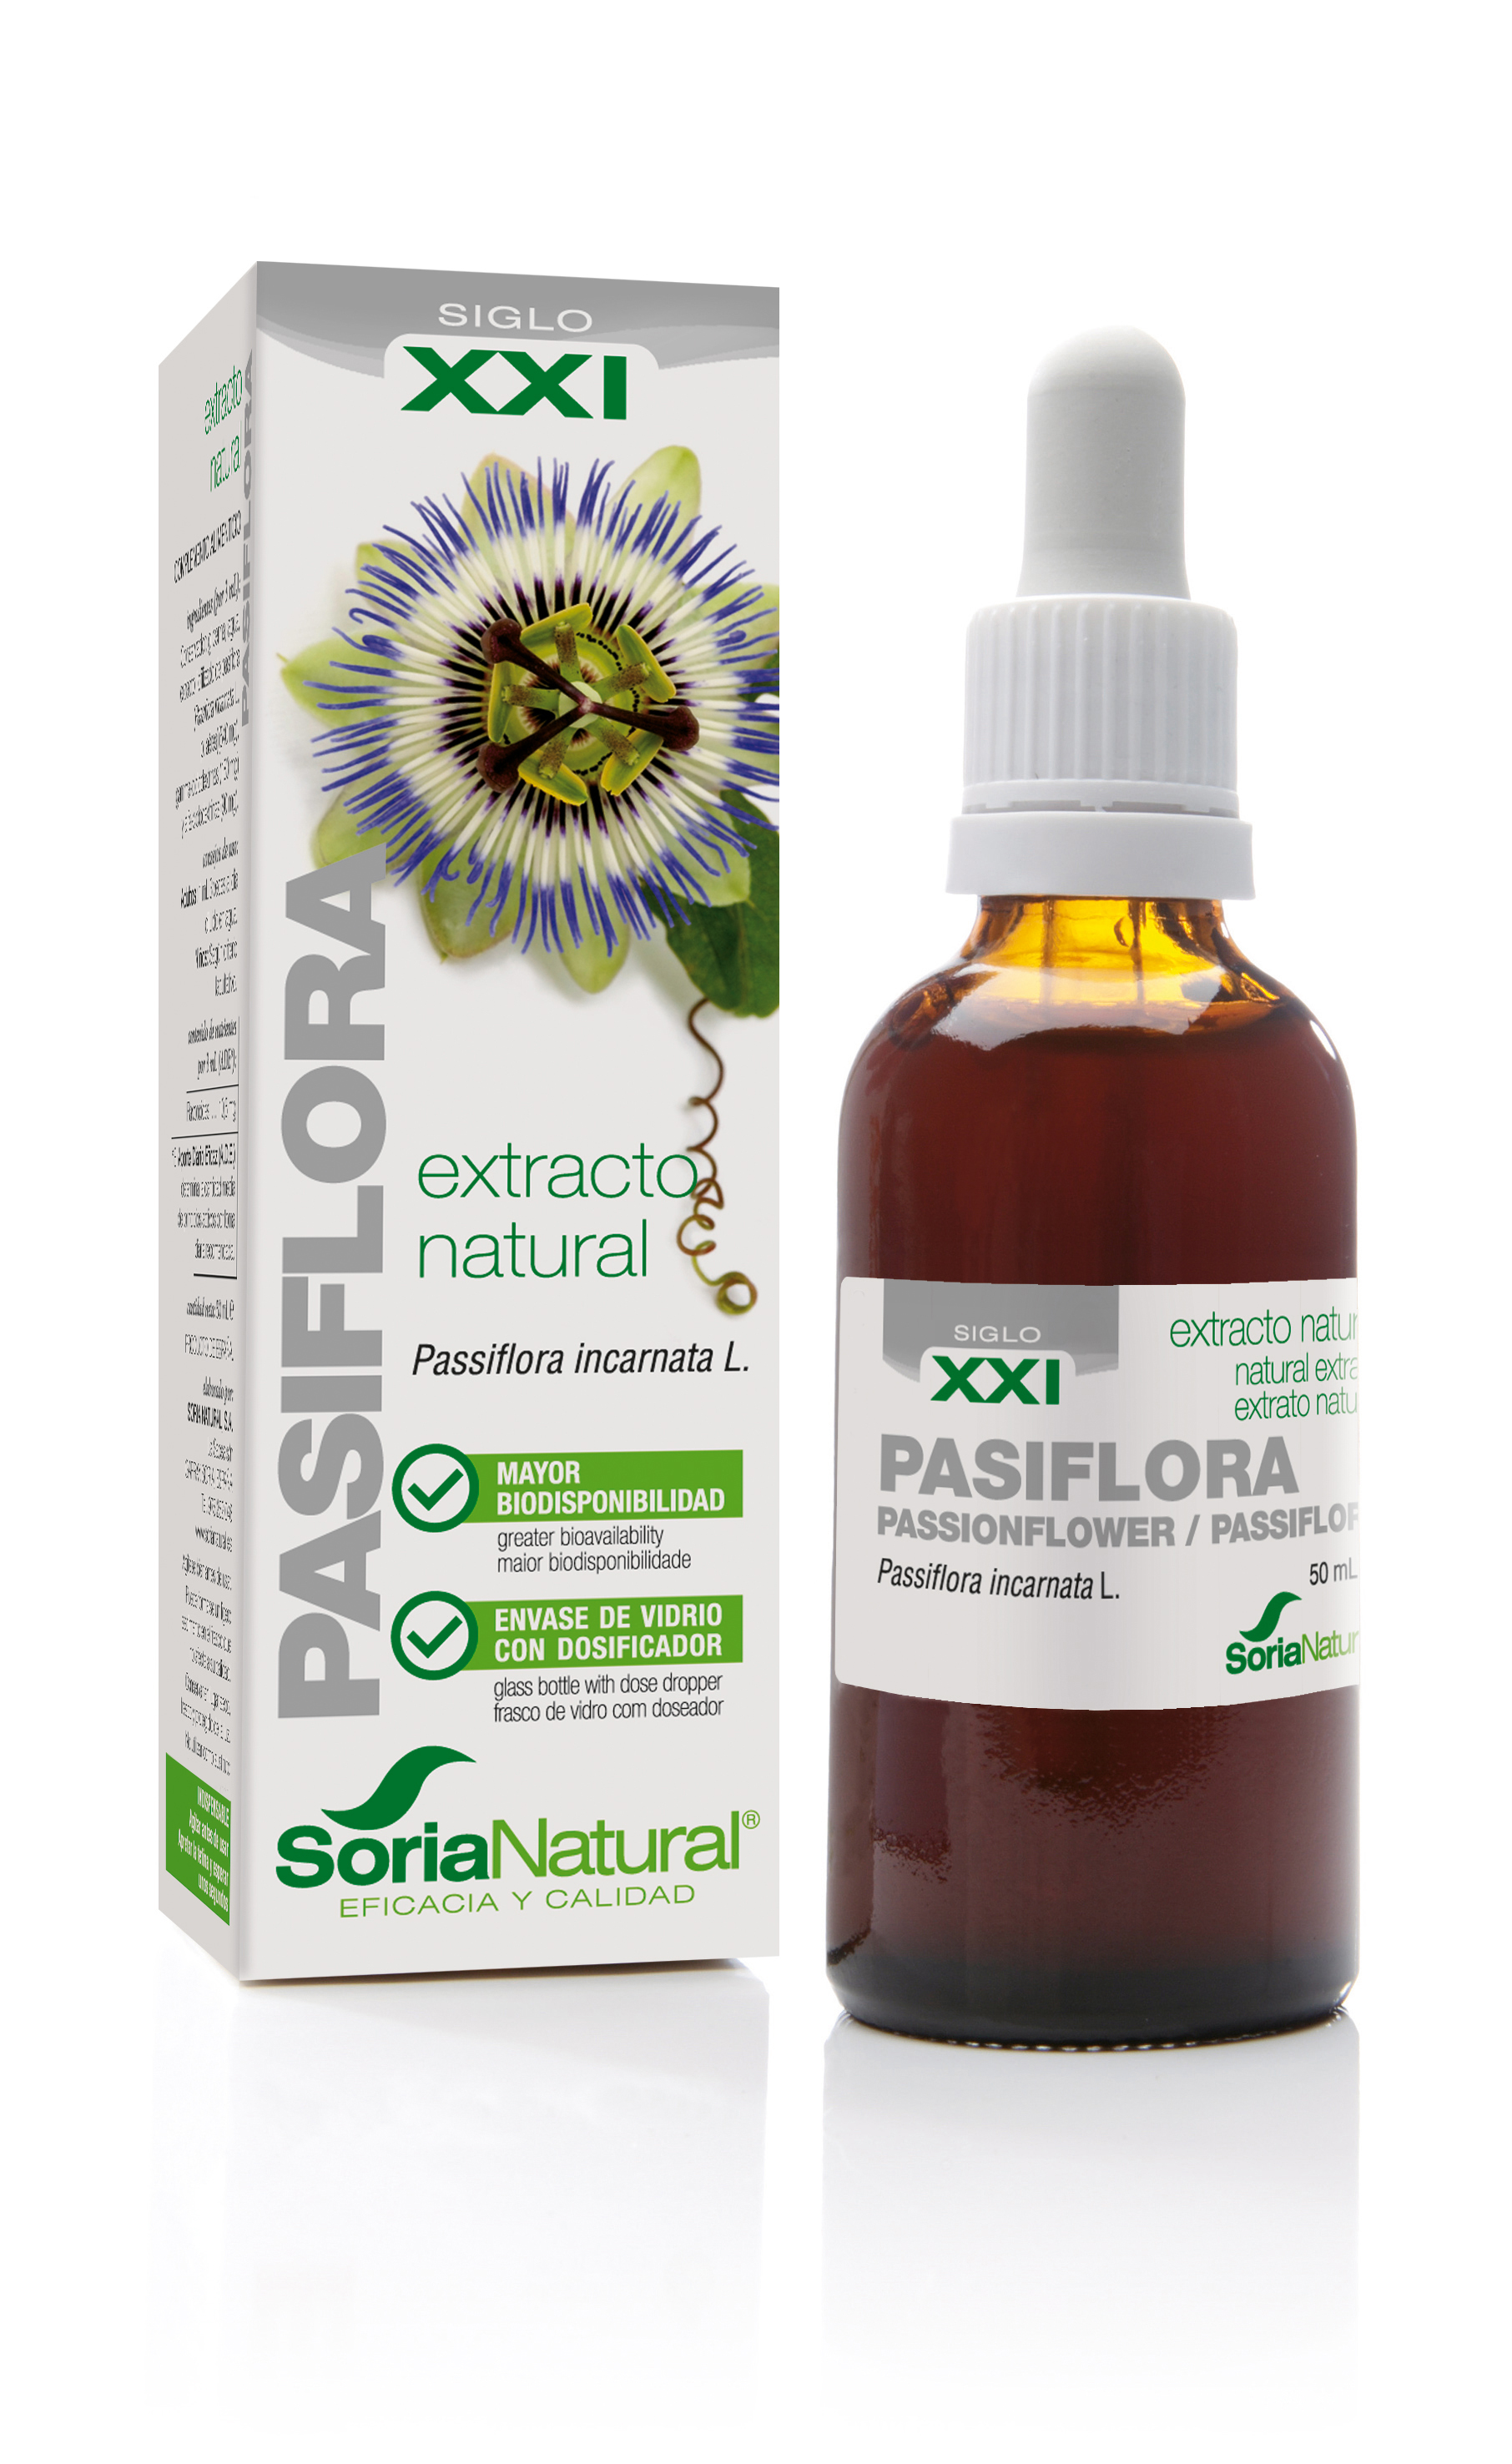 Soria Natural Siglo XXI Extracto natural de pasiflora, 50 ml